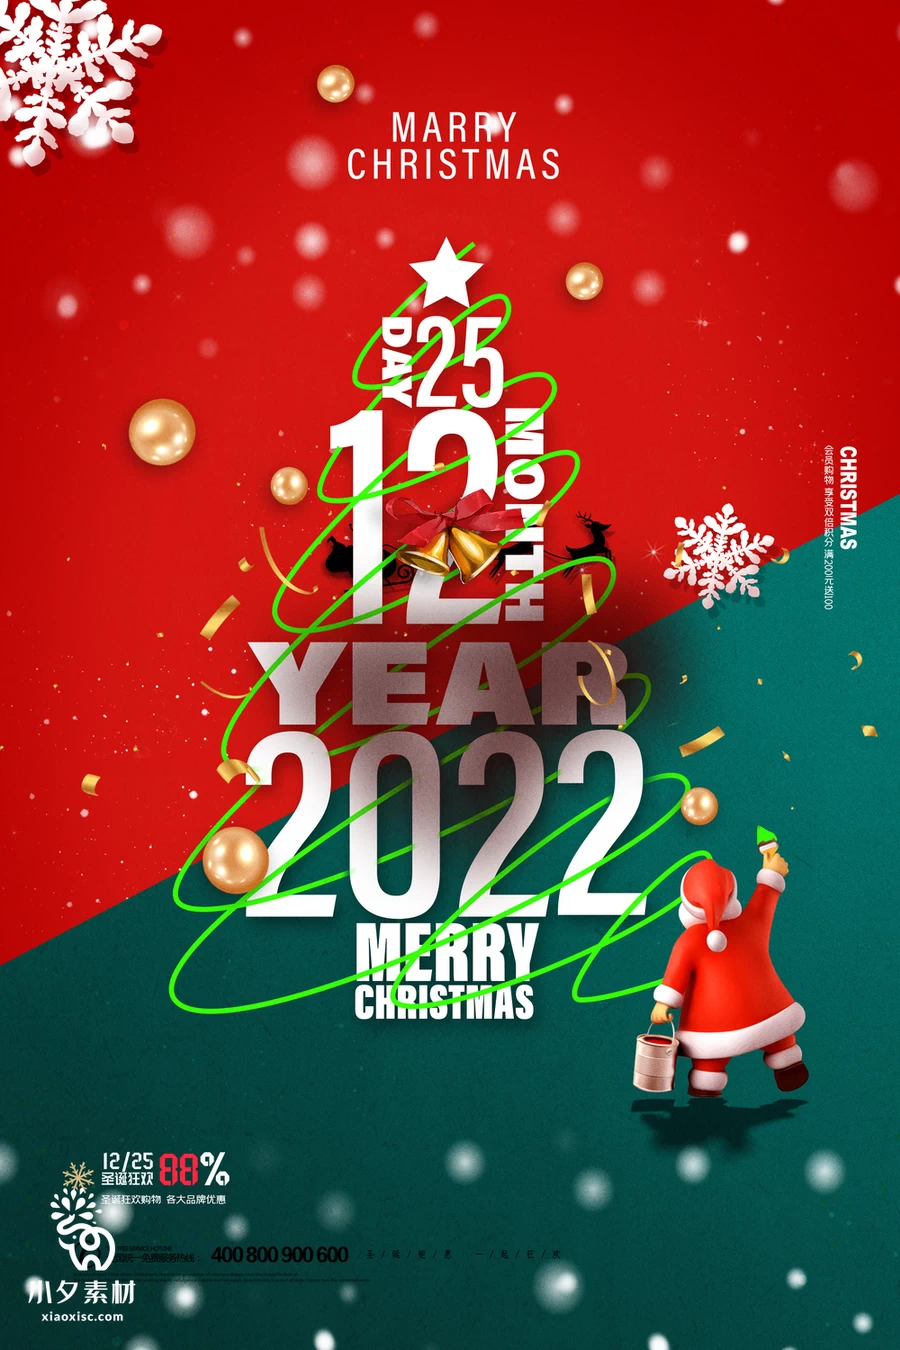 圣诞节节日节庆海报模板PSD分层设计素材【004】